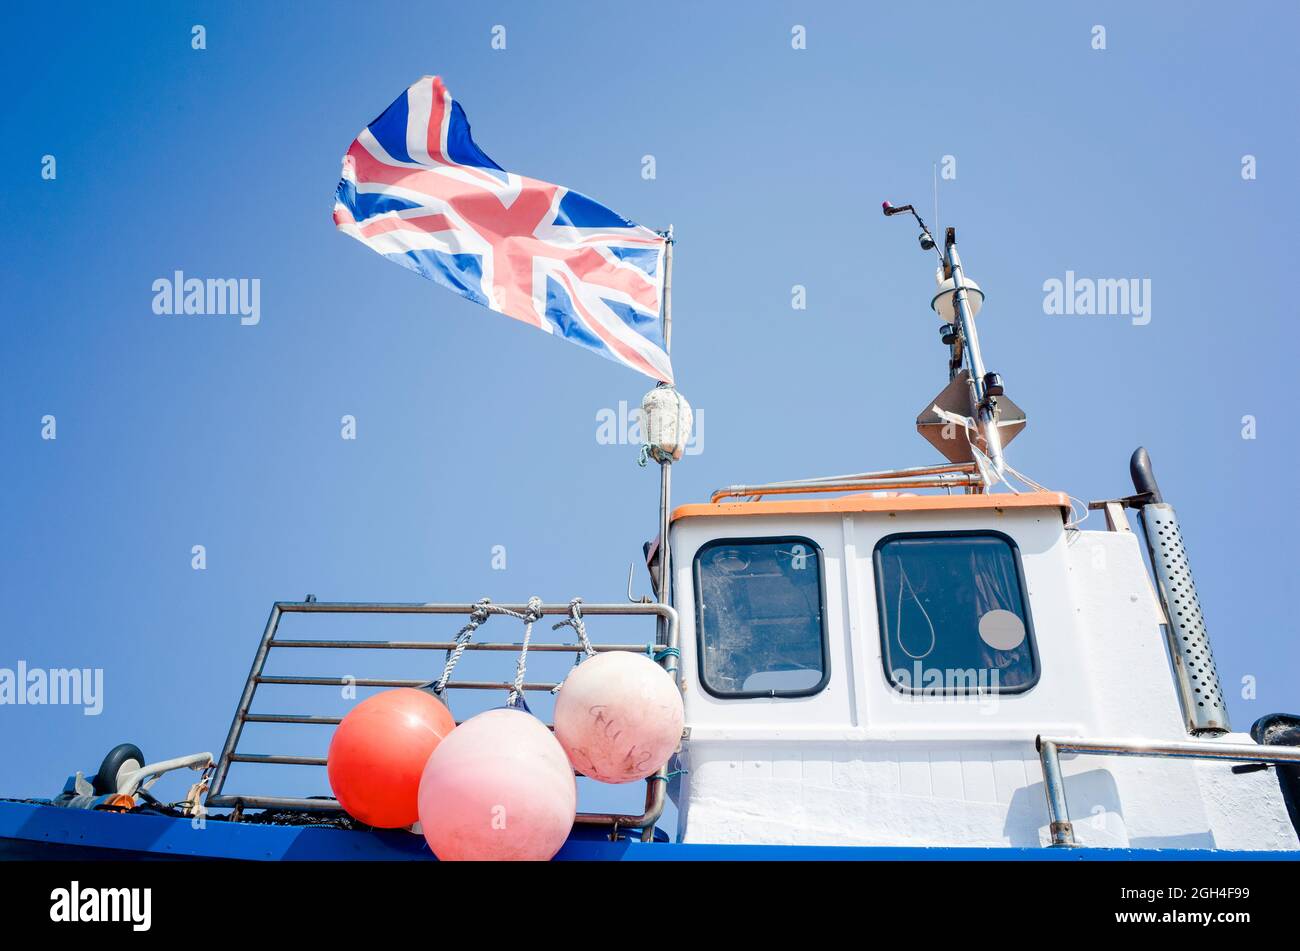 Drapeau de l'Union volant sur un bateau de pêche à Deal dans le Kent Angleterre Royaume-Uni Banque D'Images